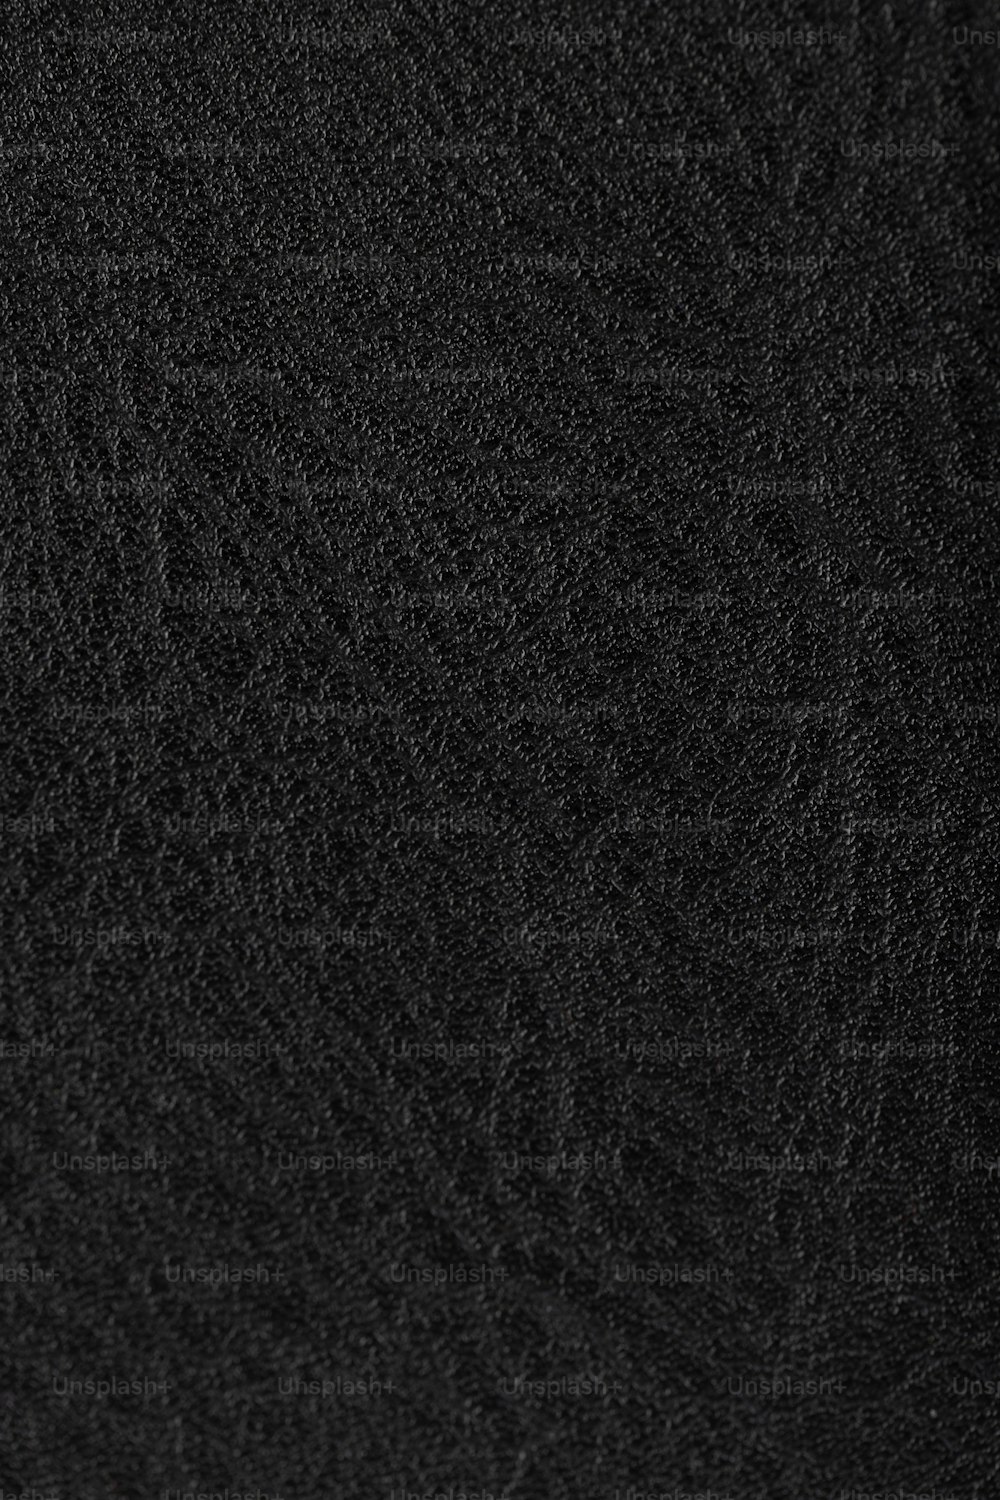 a close up of a black cloth texture